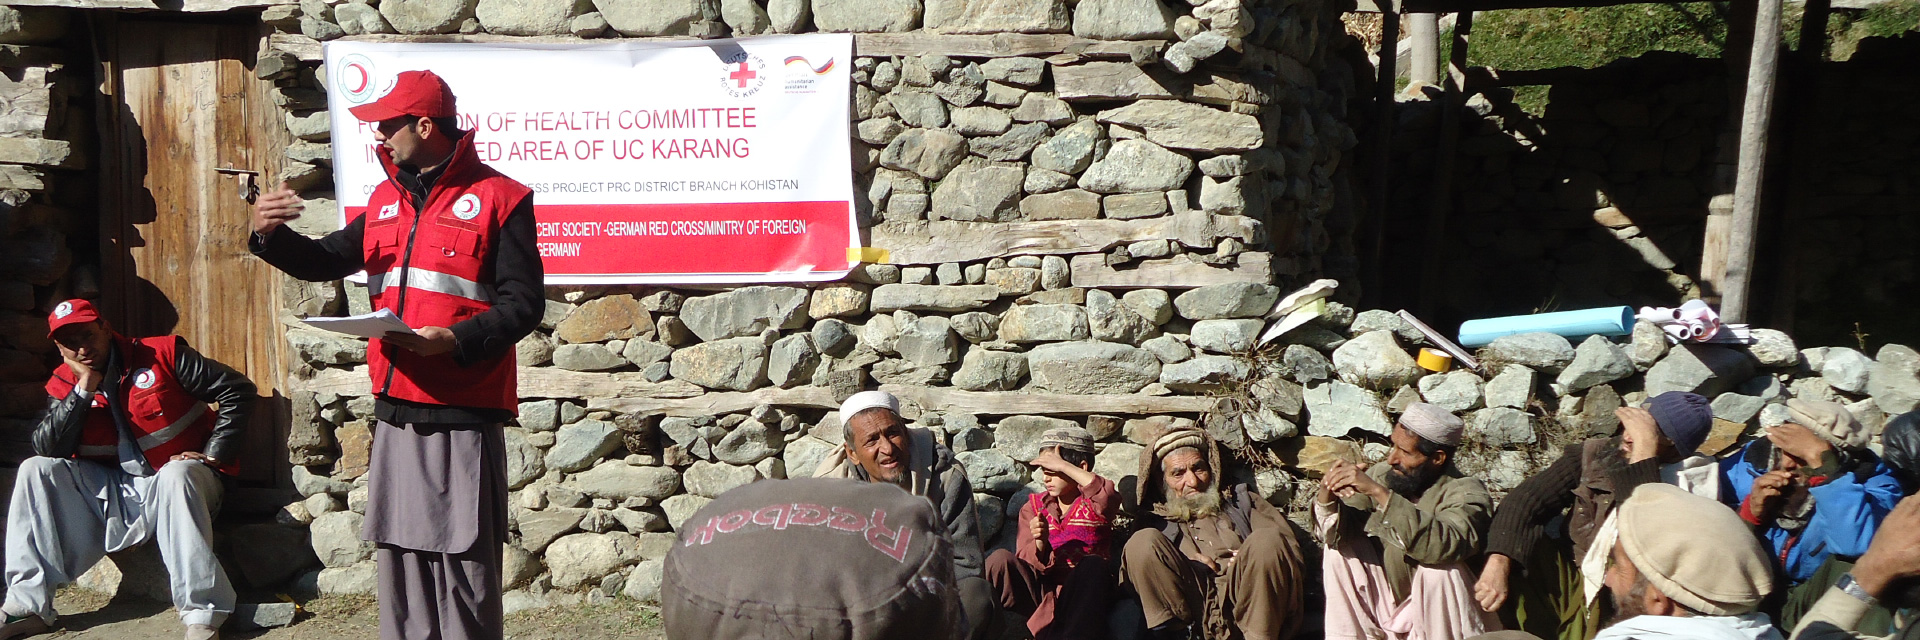 Rothalbmond-Mitarbeiter koordinieren den Wiederaufbau in Pakistan